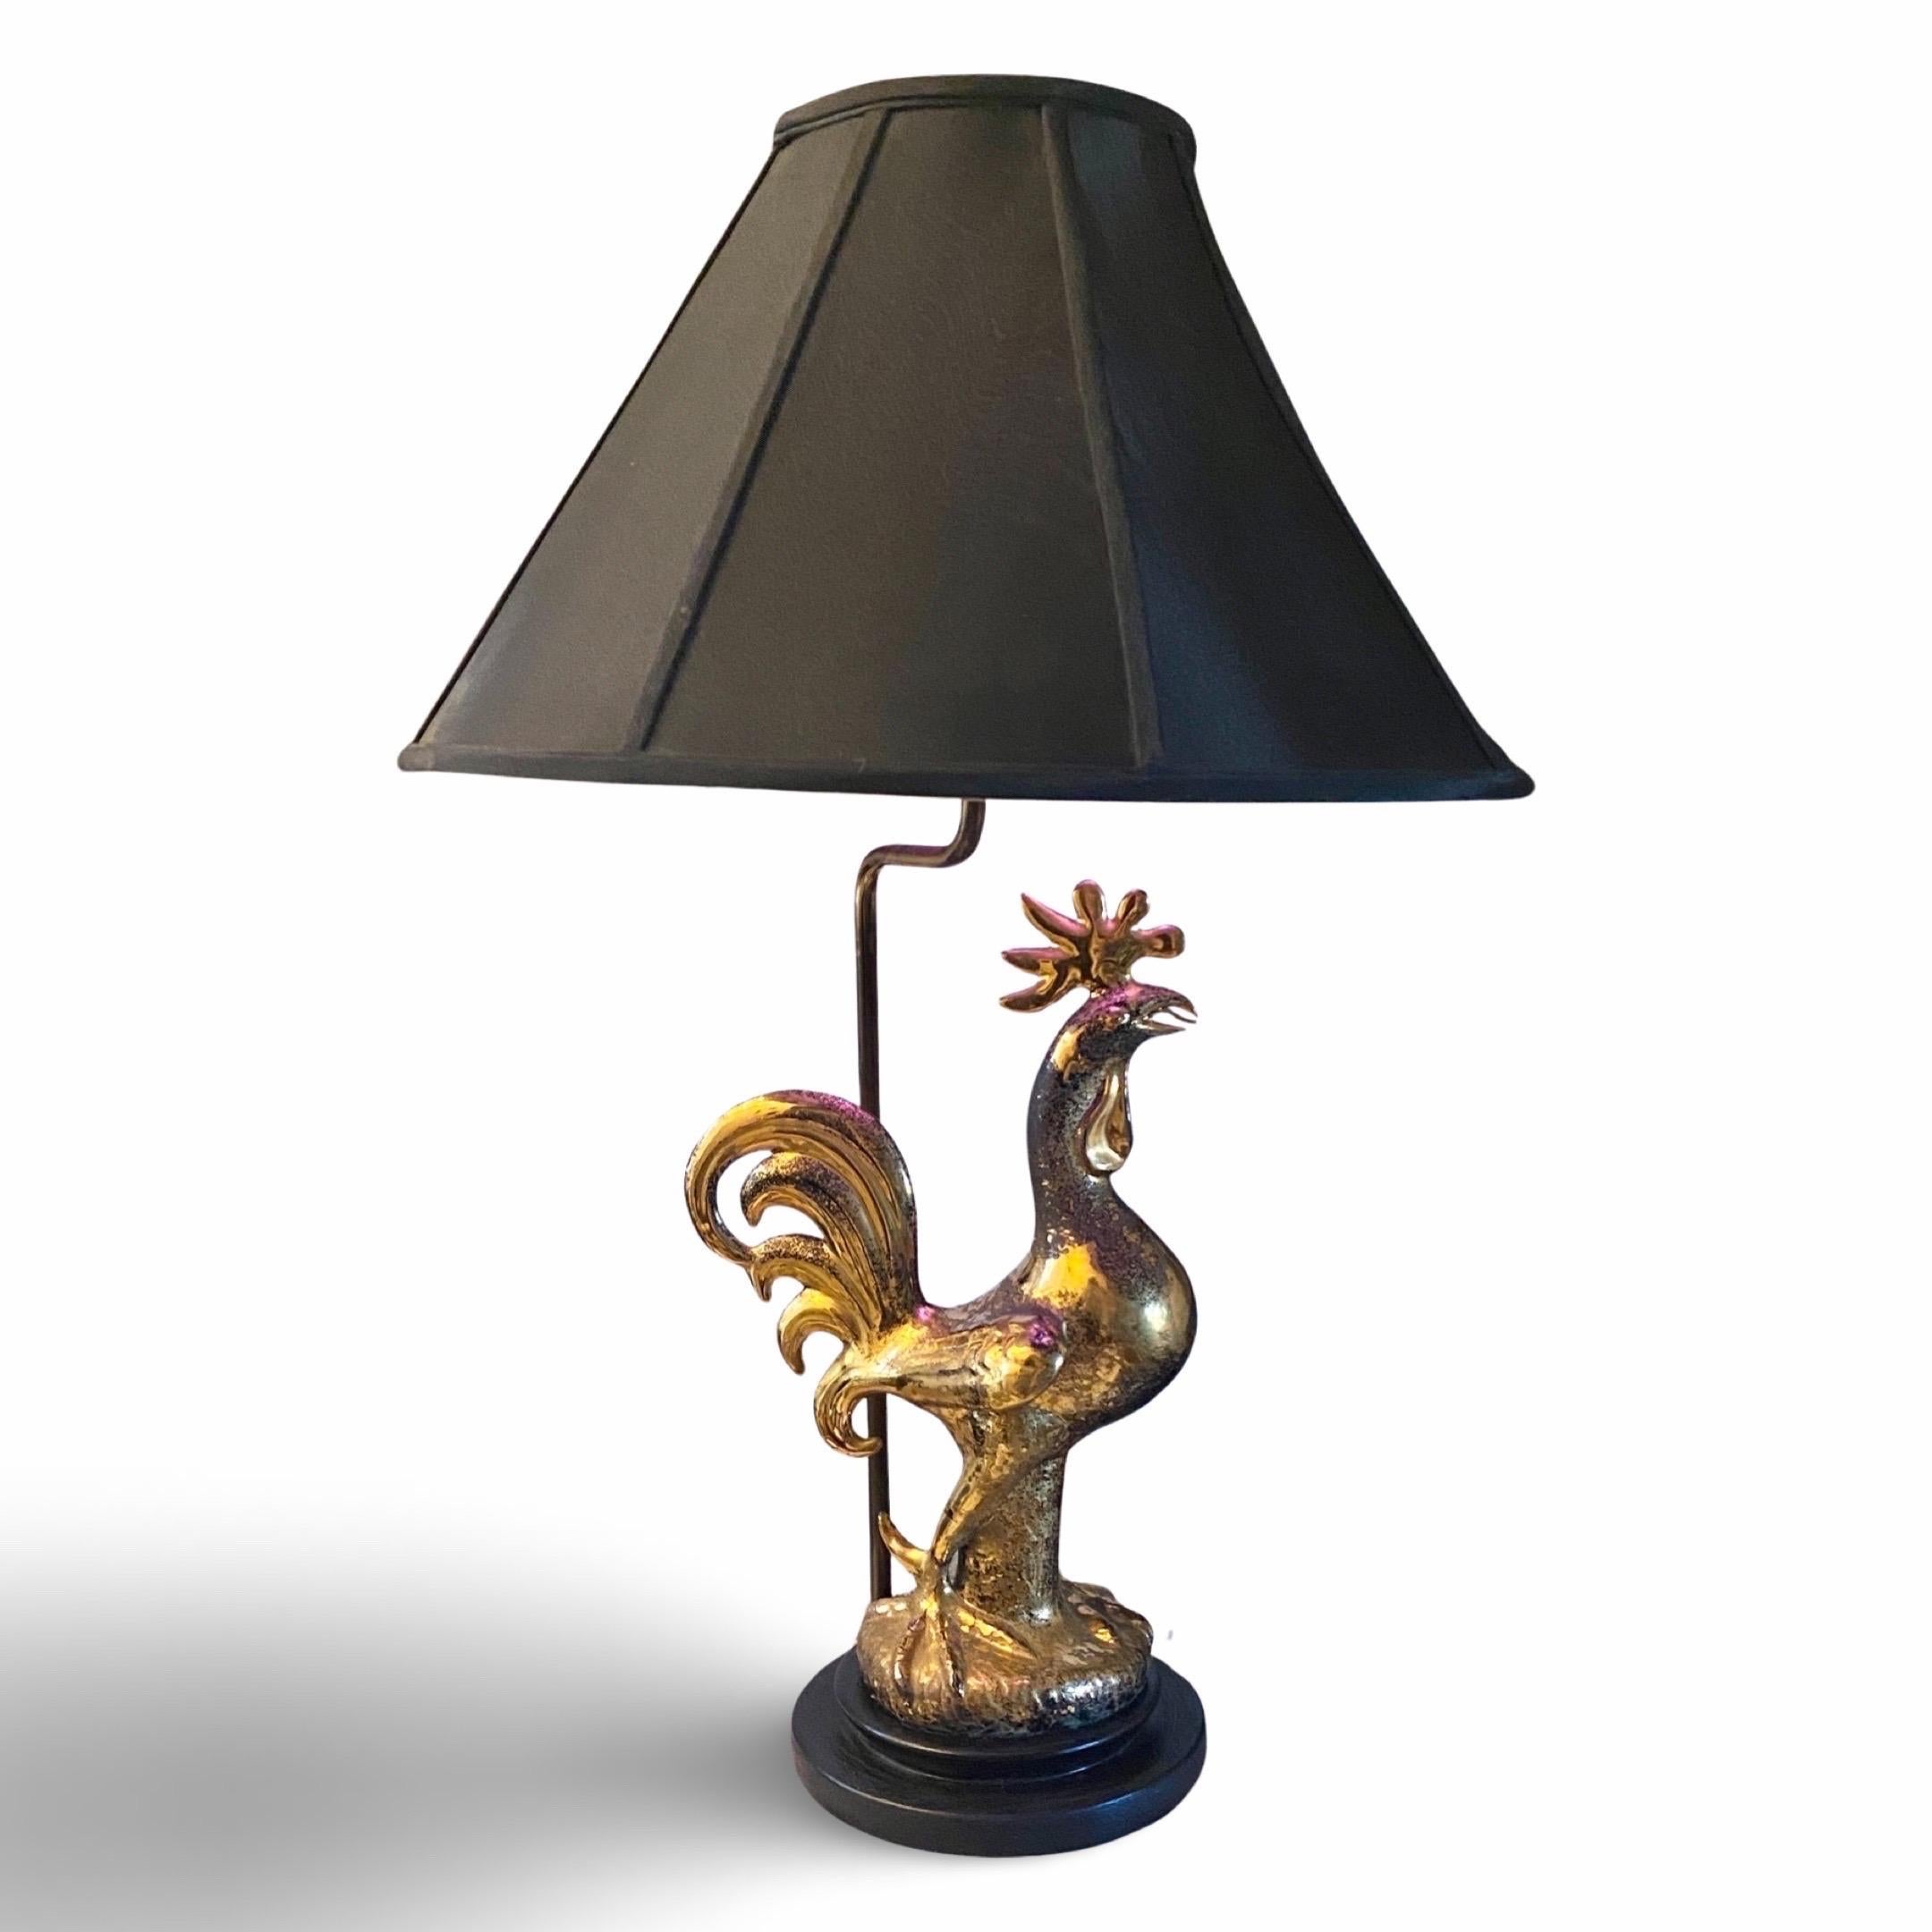 Diese Sasha Brastoff Lampe ist ein Unikat und wurde für einen persönlichen Freund von Herrn Brastoff angefertigt. Es handelt sich um eine handgefertigte Skulptur eines Hahns, die einen hohen Sammlerwert hat und sehr begehrt ist. Ein Hahn war das